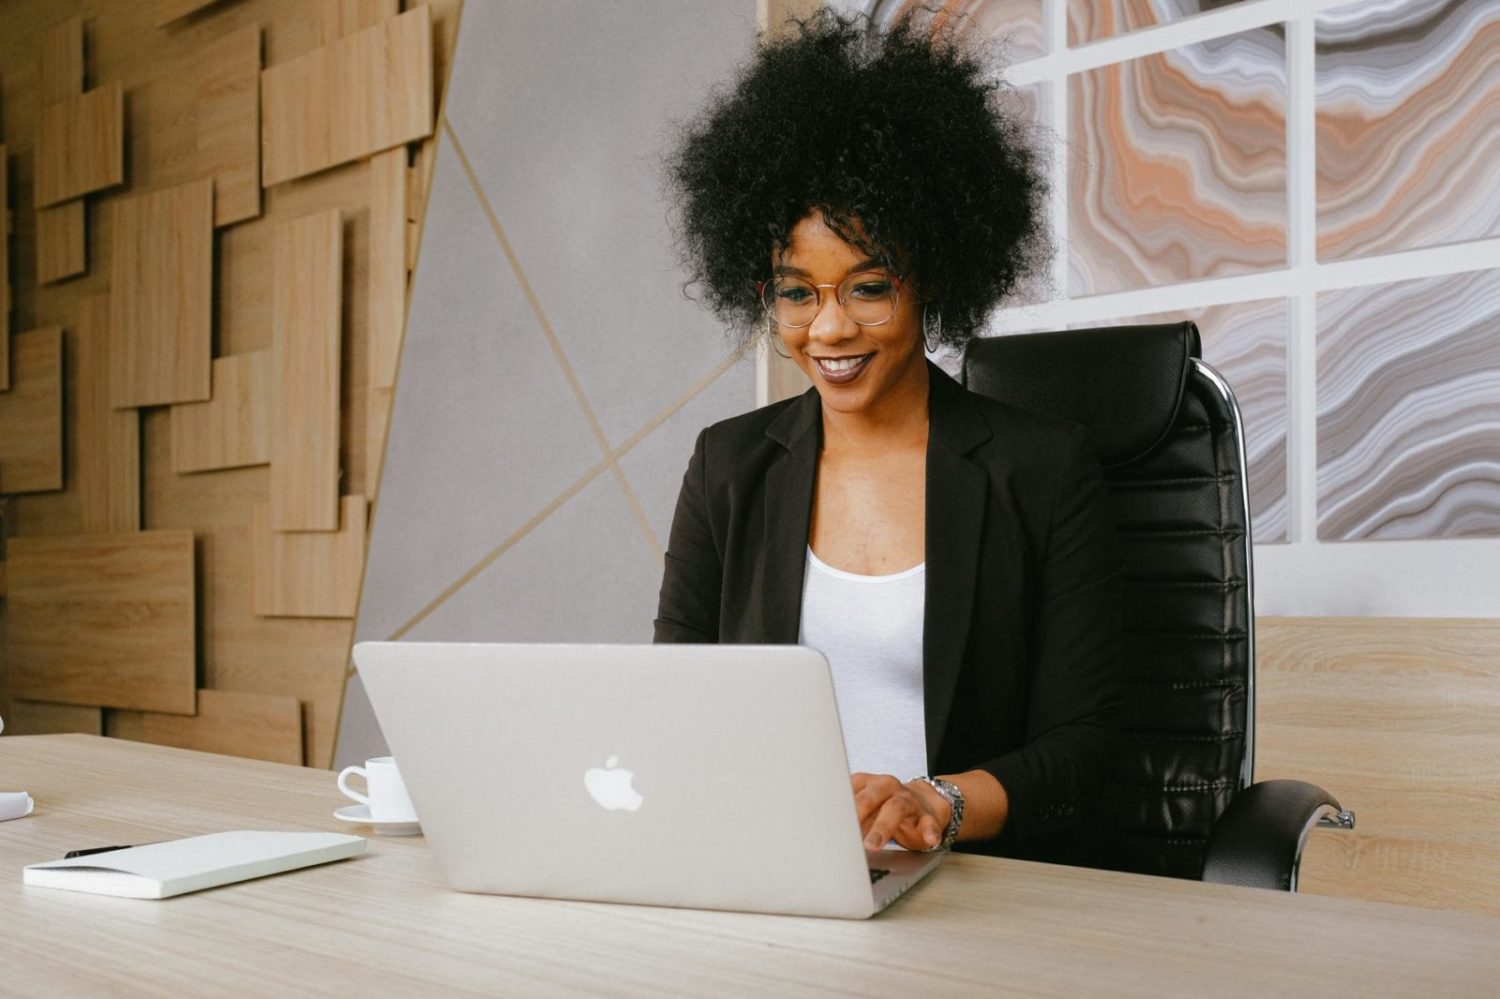 Uma pesquisa da Triwi, consultoria em marketing digital, revela que 24% das empresas entrevistadas não têm mulheres negras no quadro de funcionários